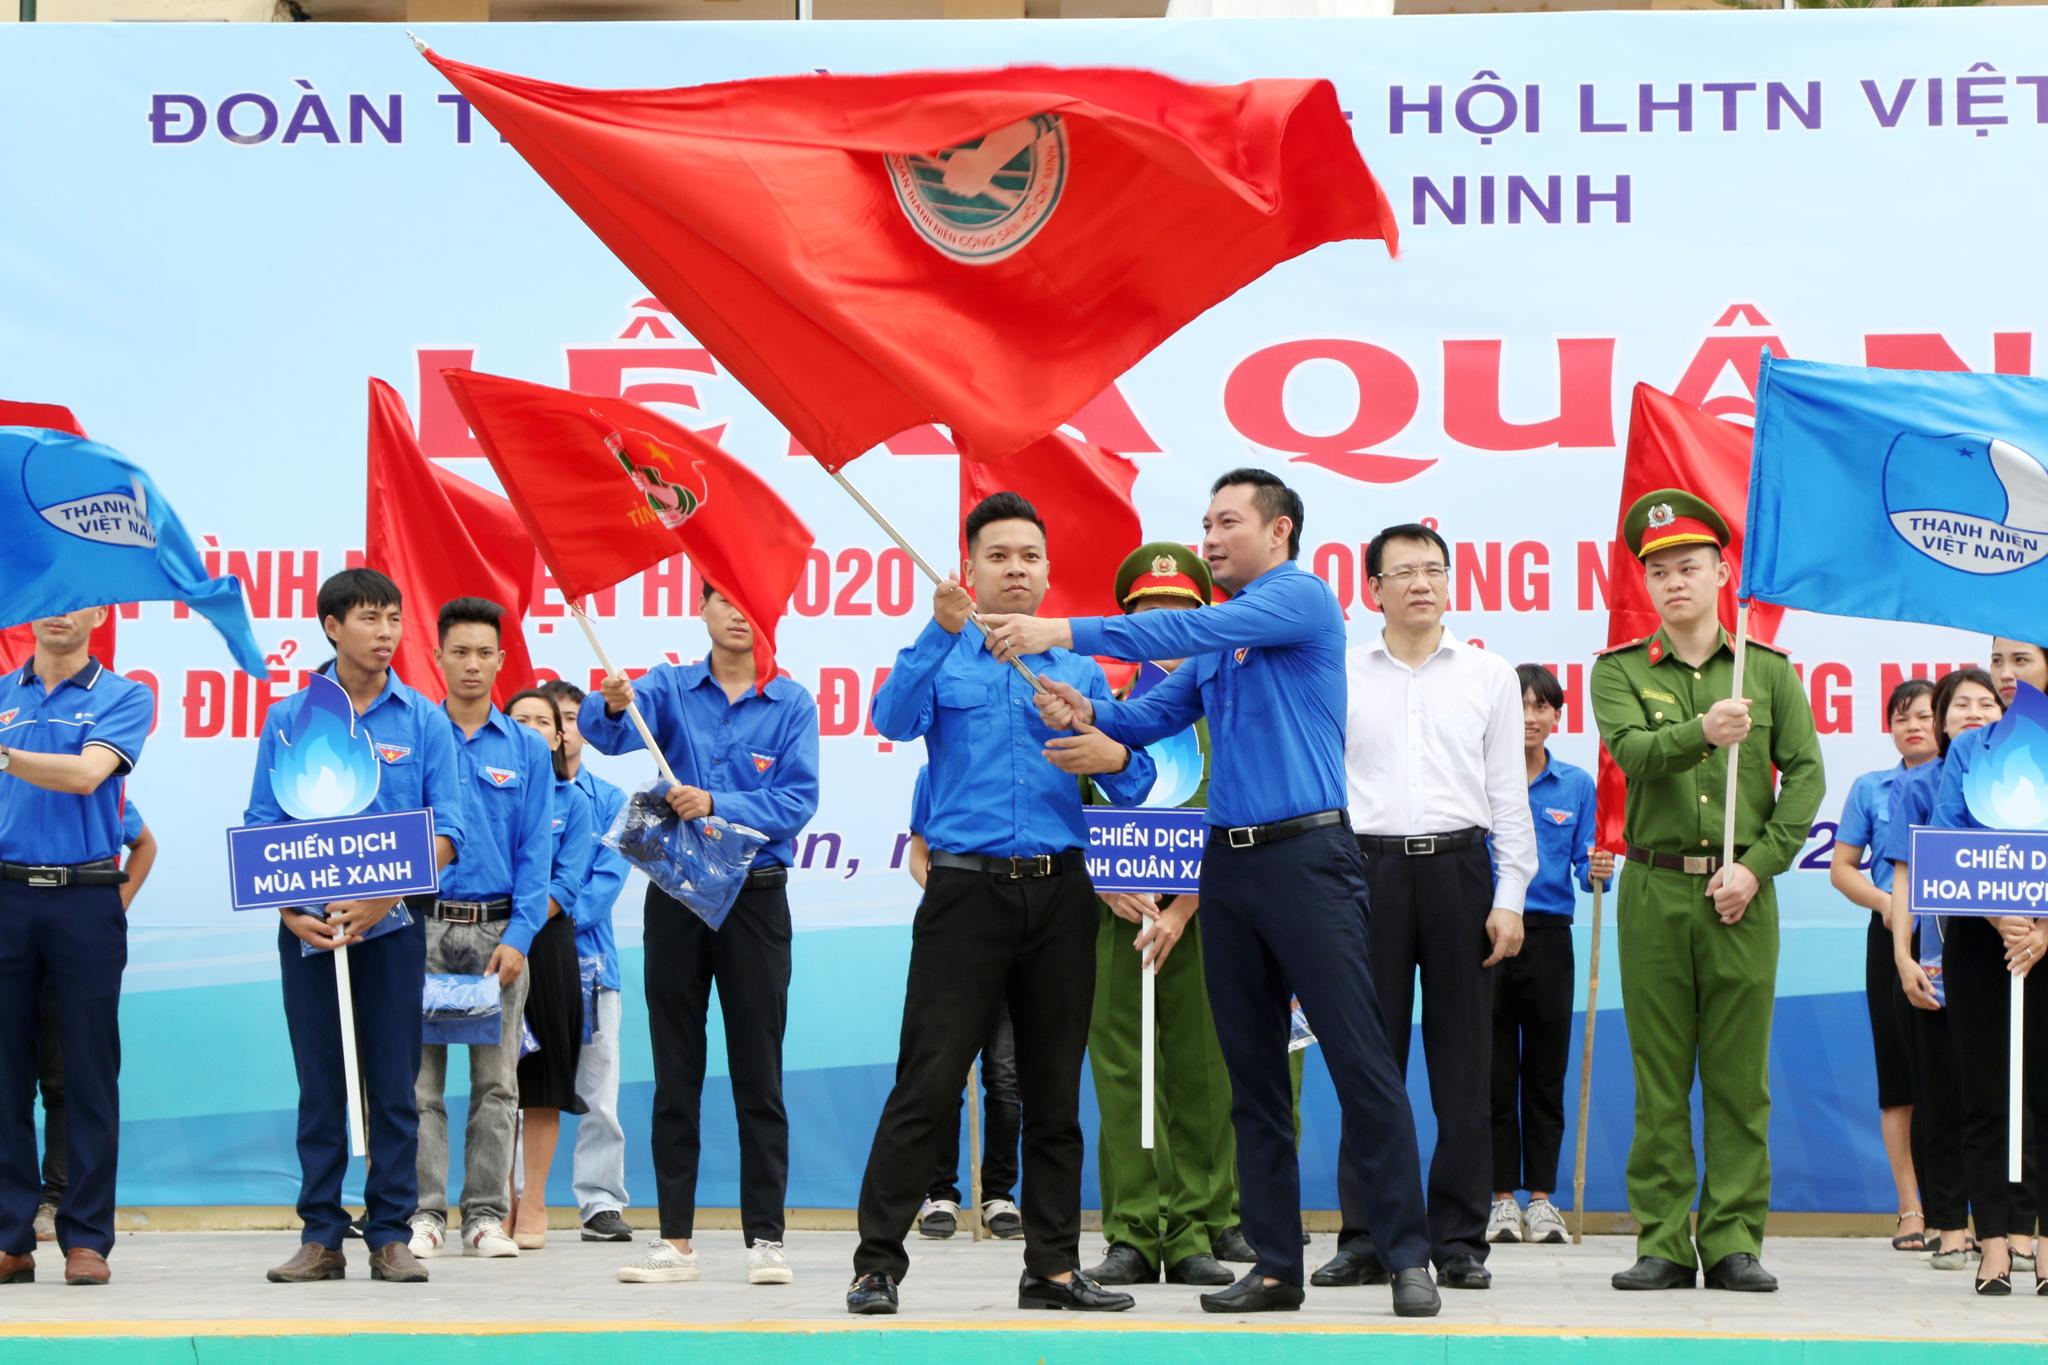 Đồng chí Lê Hùng Sơn - Bí thư Tỉnh đoàn Quảng Ninh trao cờ lệnh cho các đội hình thanh niên tình nguyện hè 2020